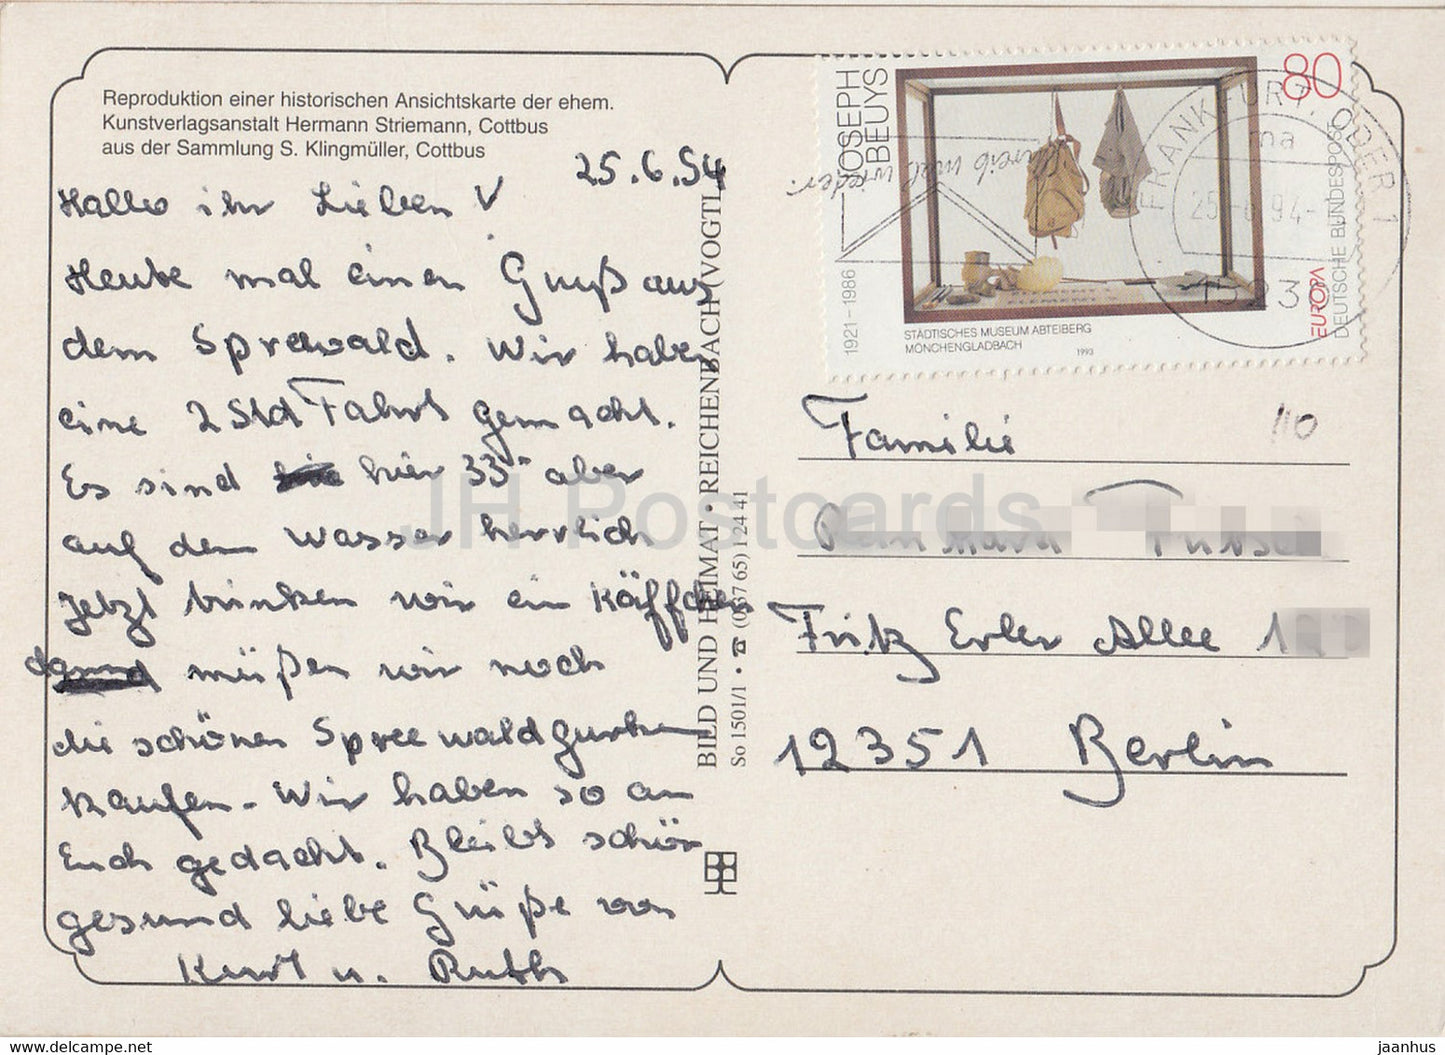 Alte Postkarte REPRODUKTION - Frauen im Boot - Volkstrachten - 1994 - Deutschland - gebraucht